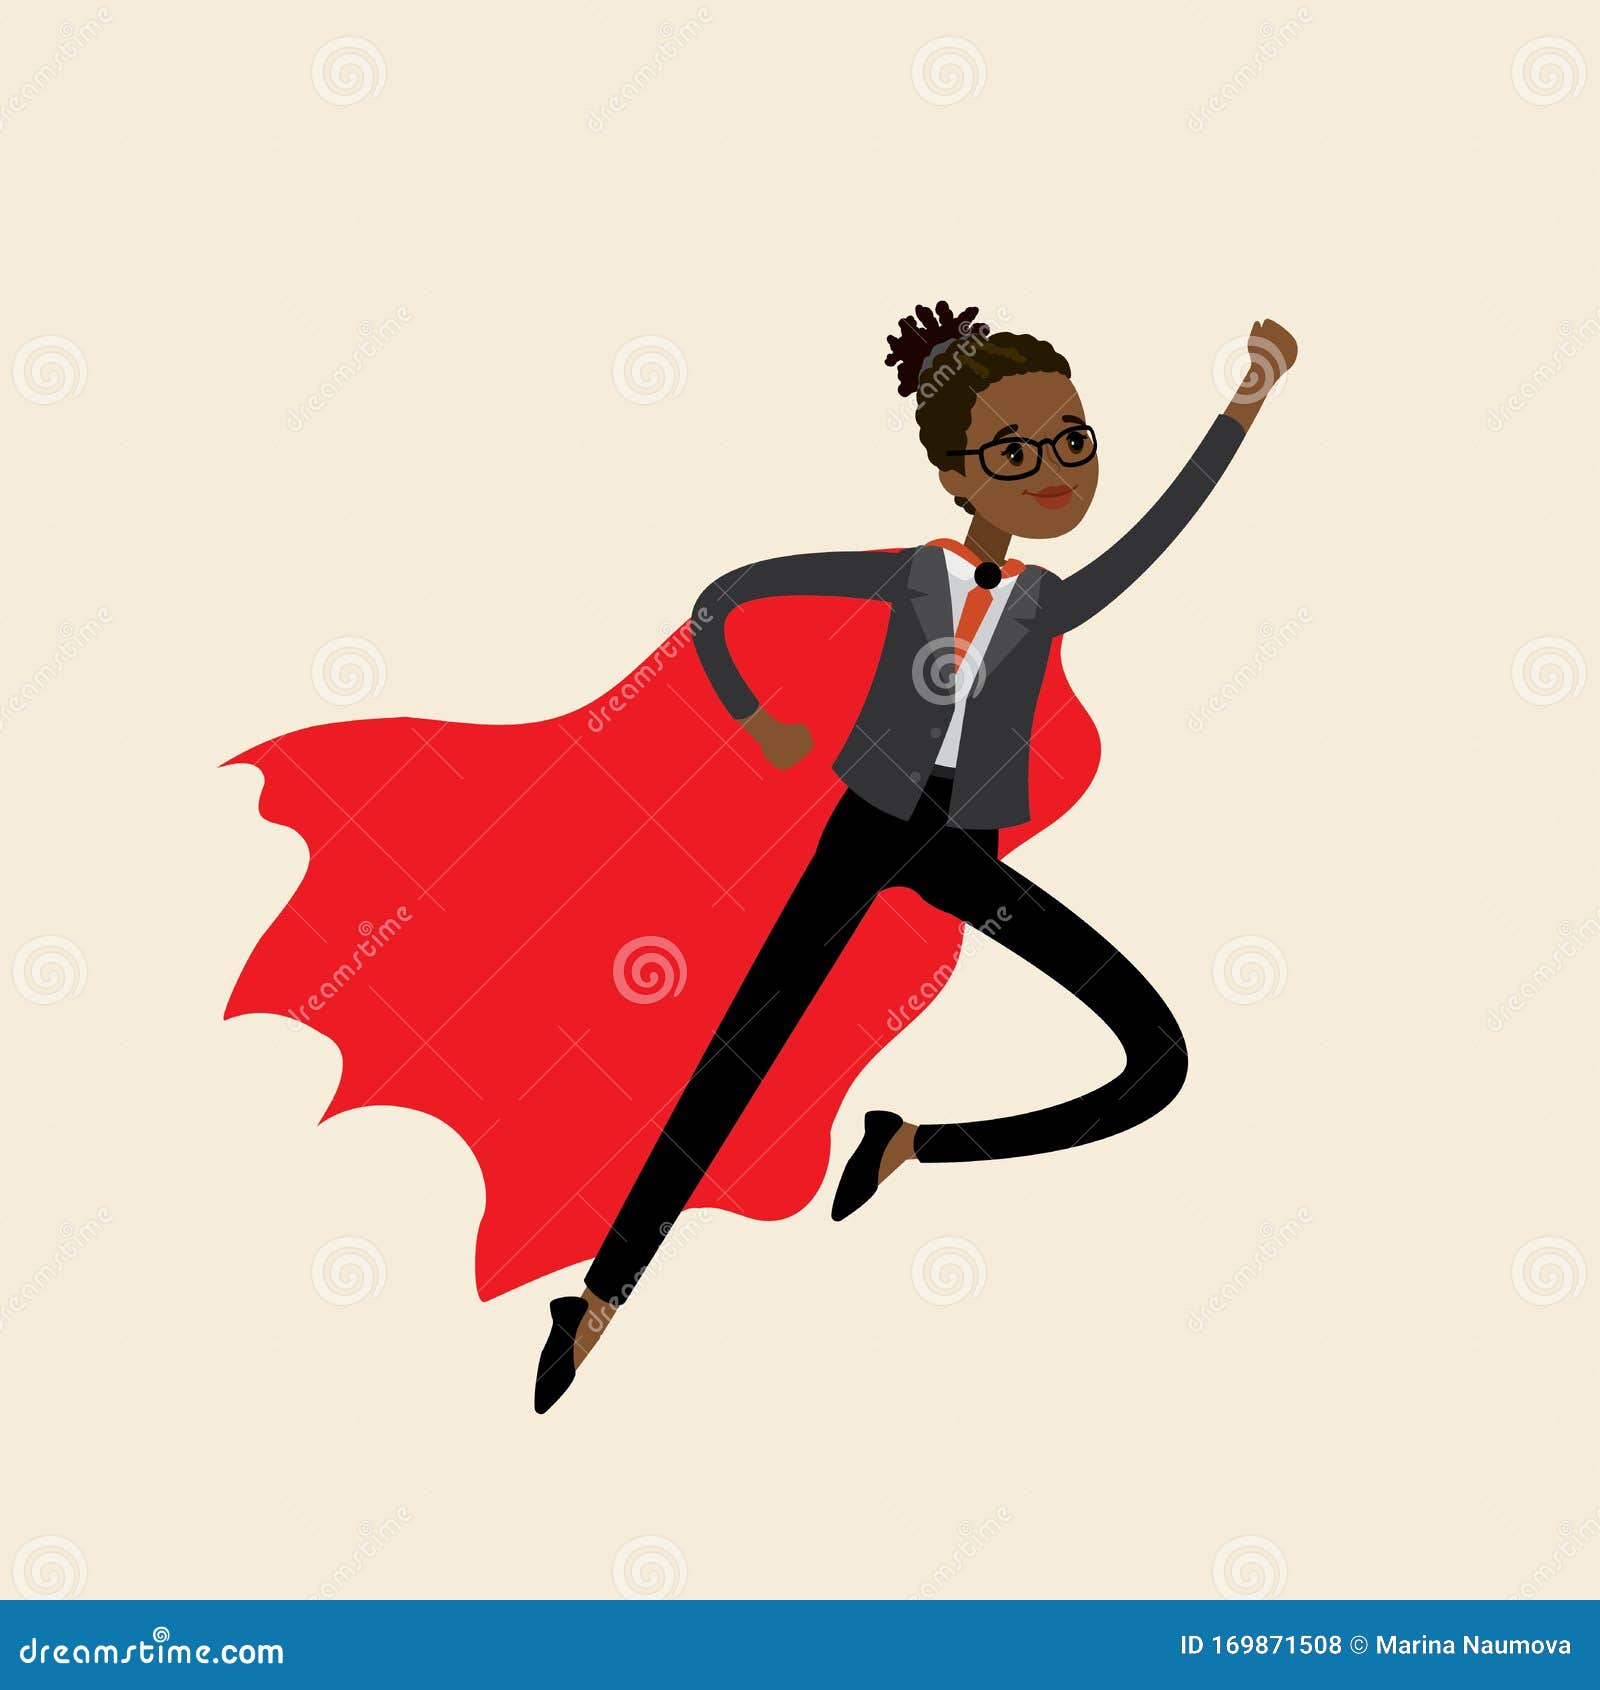 africanamerican woman looking like super hero flying